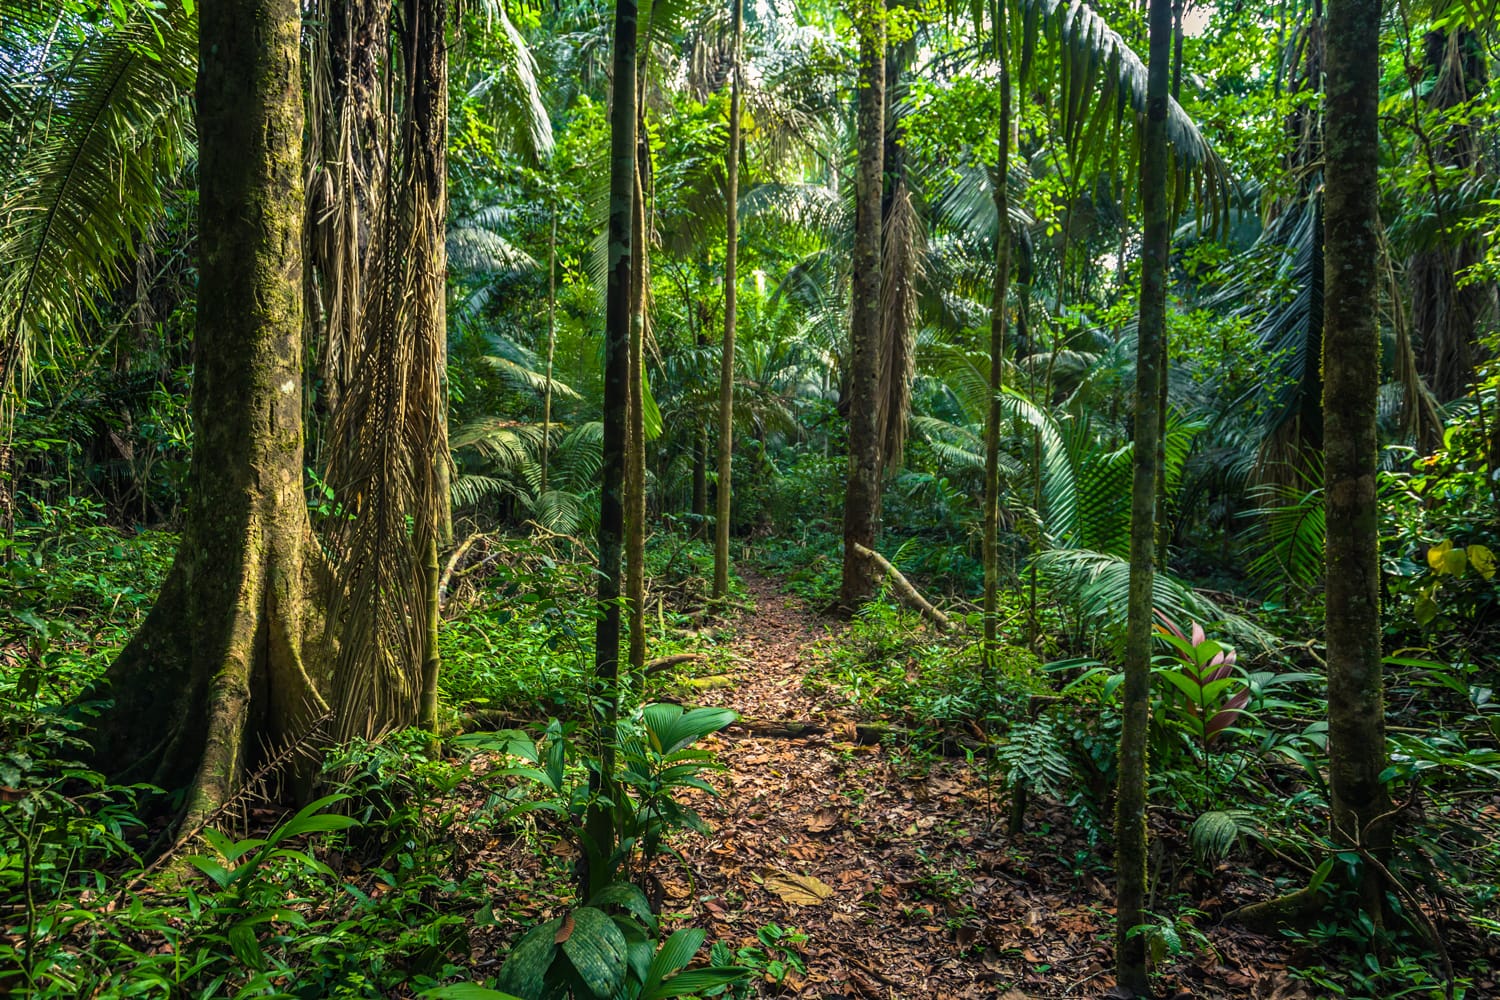 The Amazon rainforest in Manu National Park, Peru